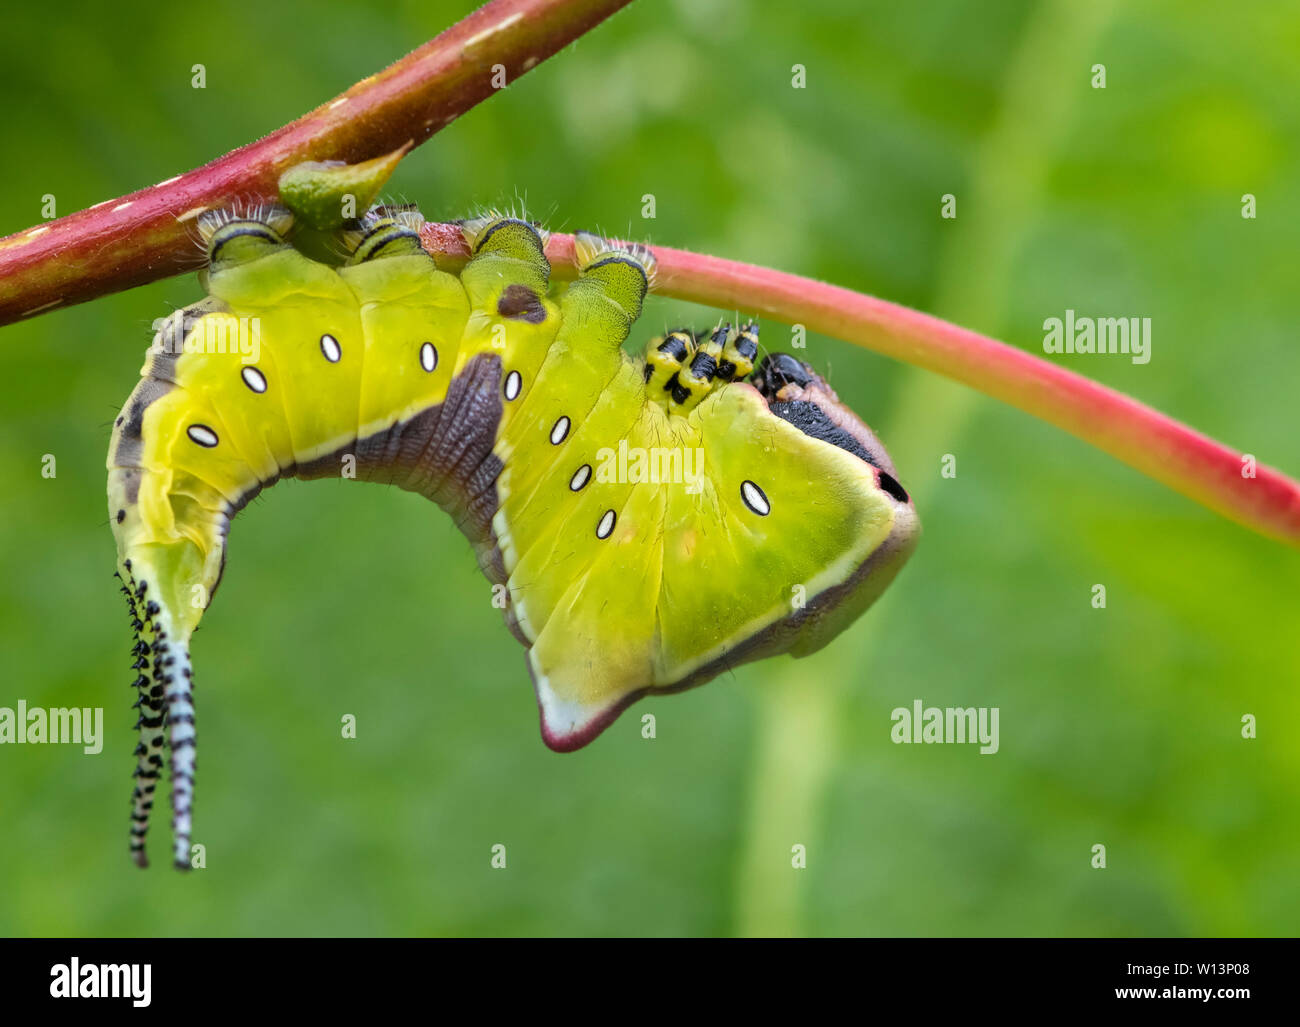 Jeune larve (caterpillar) de l'Puss Moth (Cerura vinula) sur un peuplier. Il adopte une posture menaçante lorsqu'il est dérangé Banque D'Images